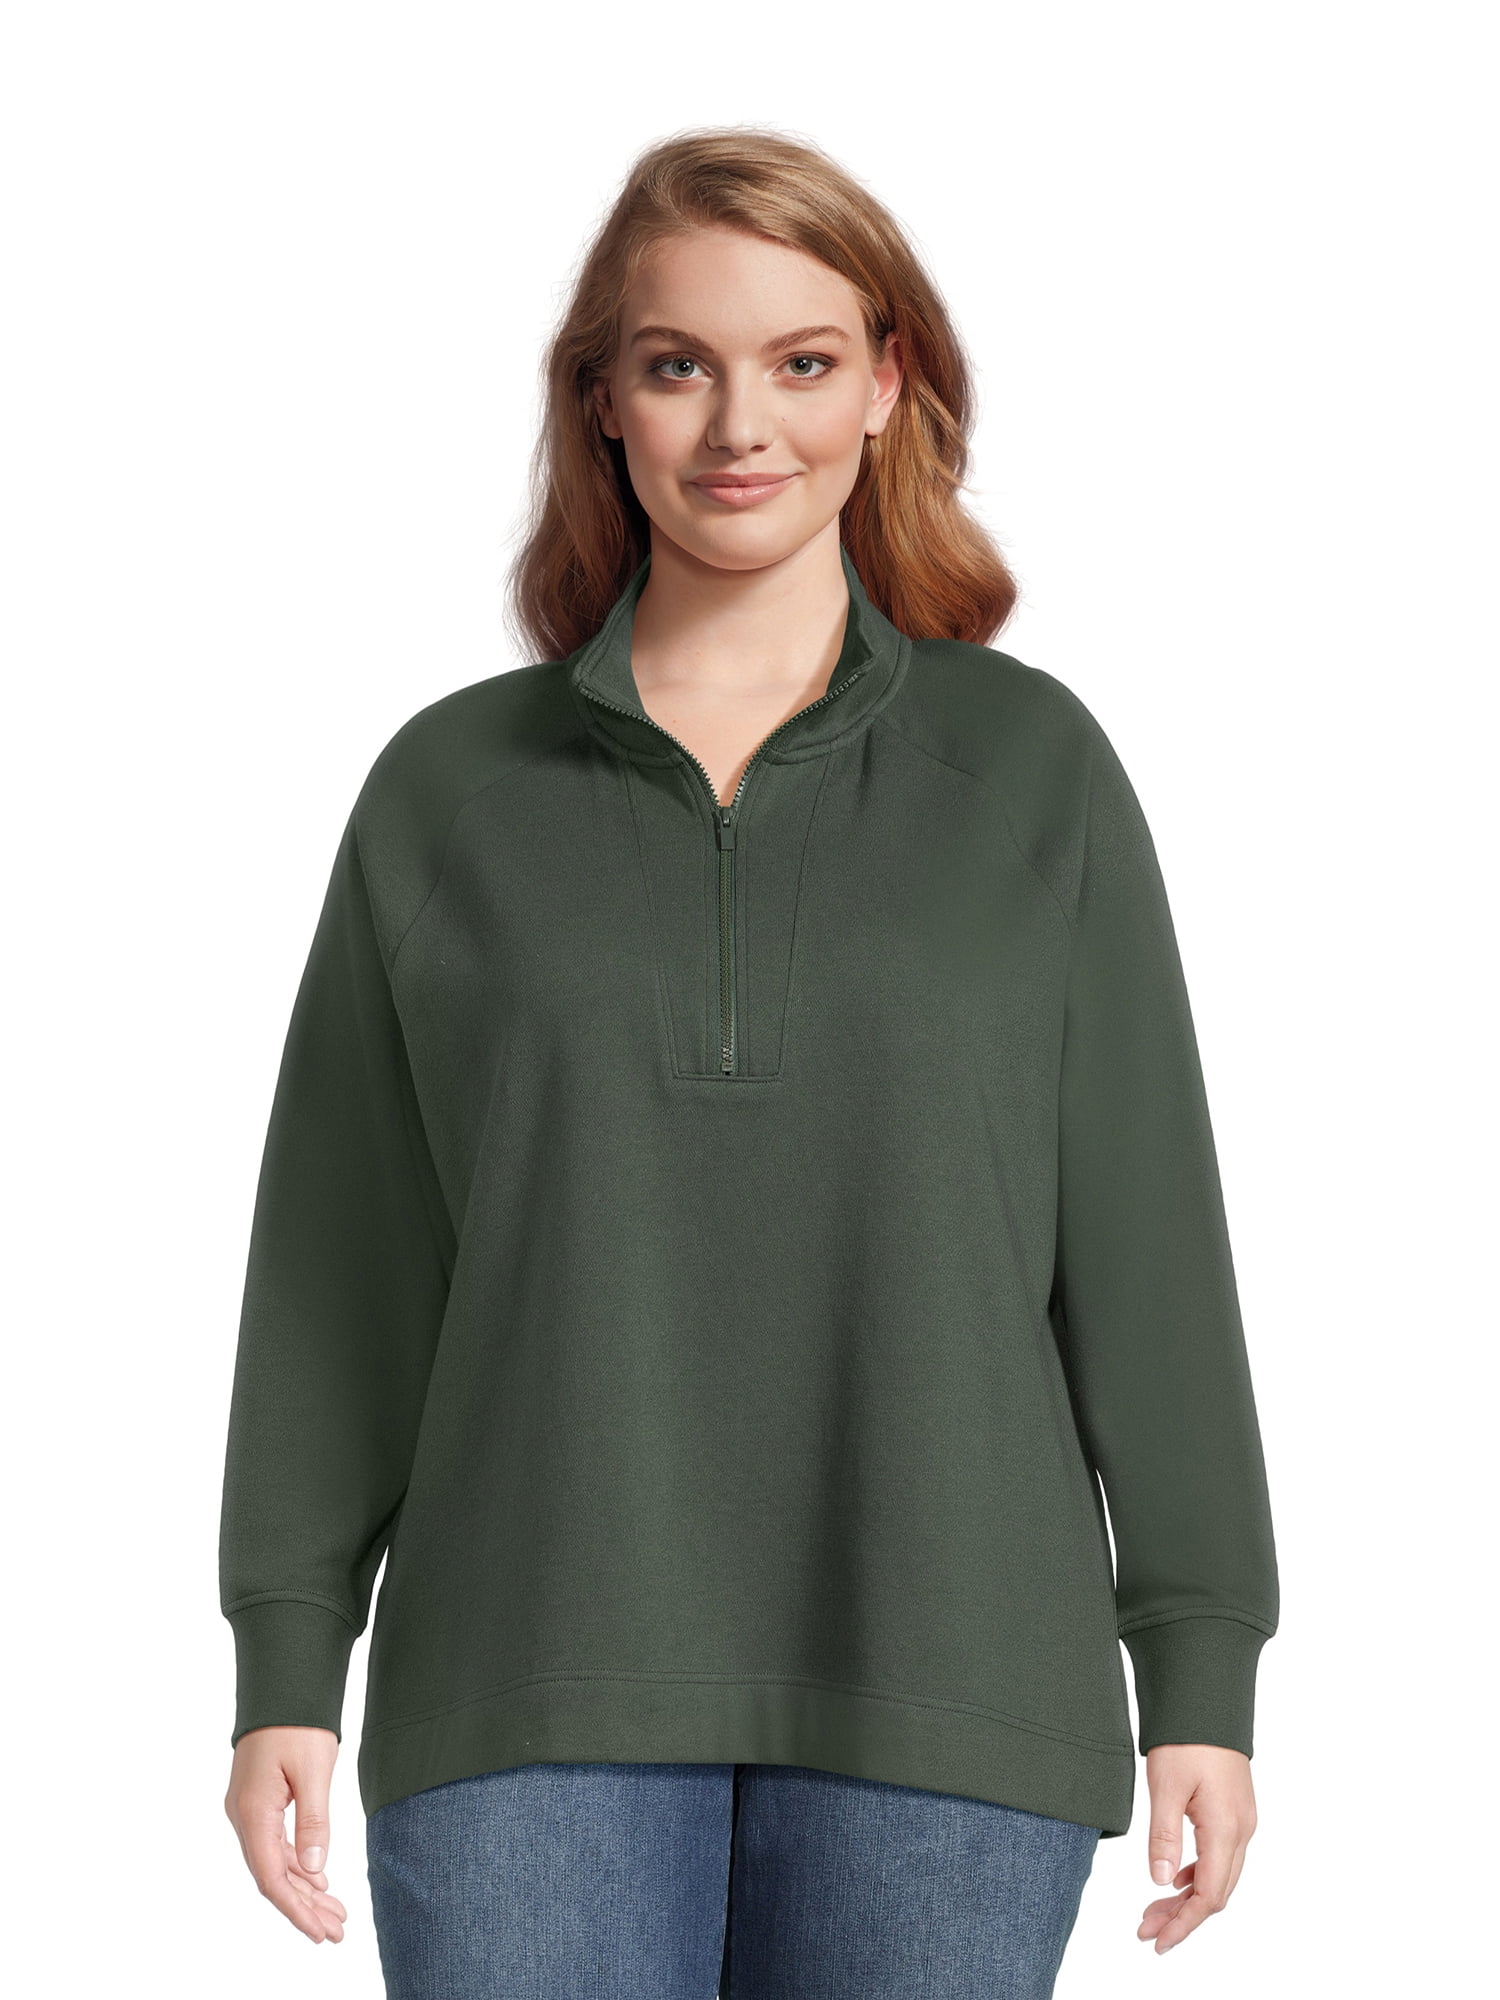 Terra & Sky Women's Plus Size Quarter Zip Sweatshirt - Walmart.com